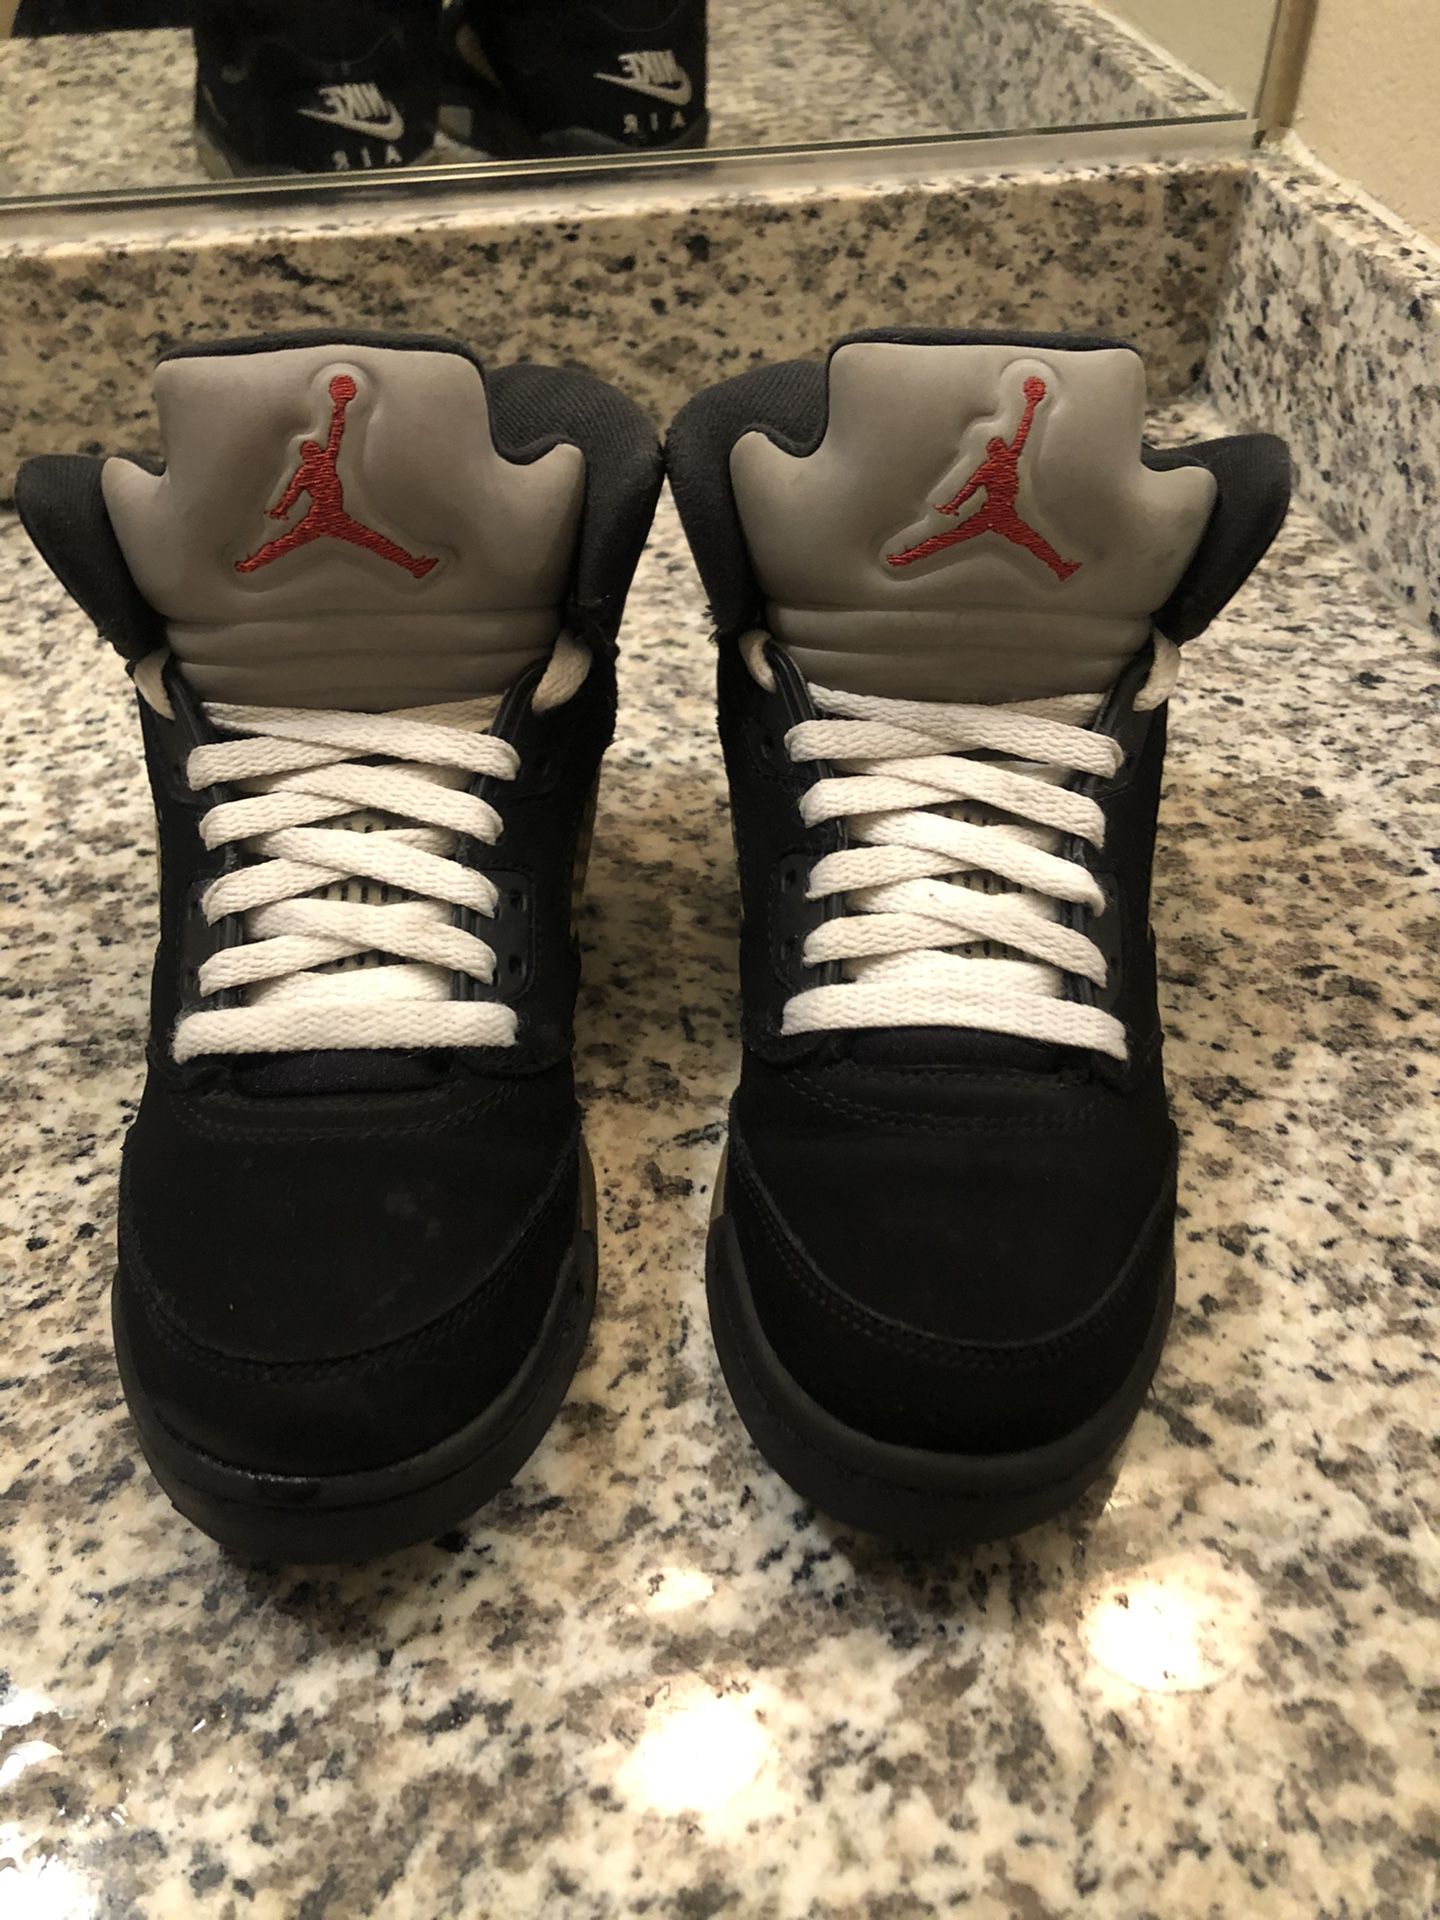 Jordan 5s size 5